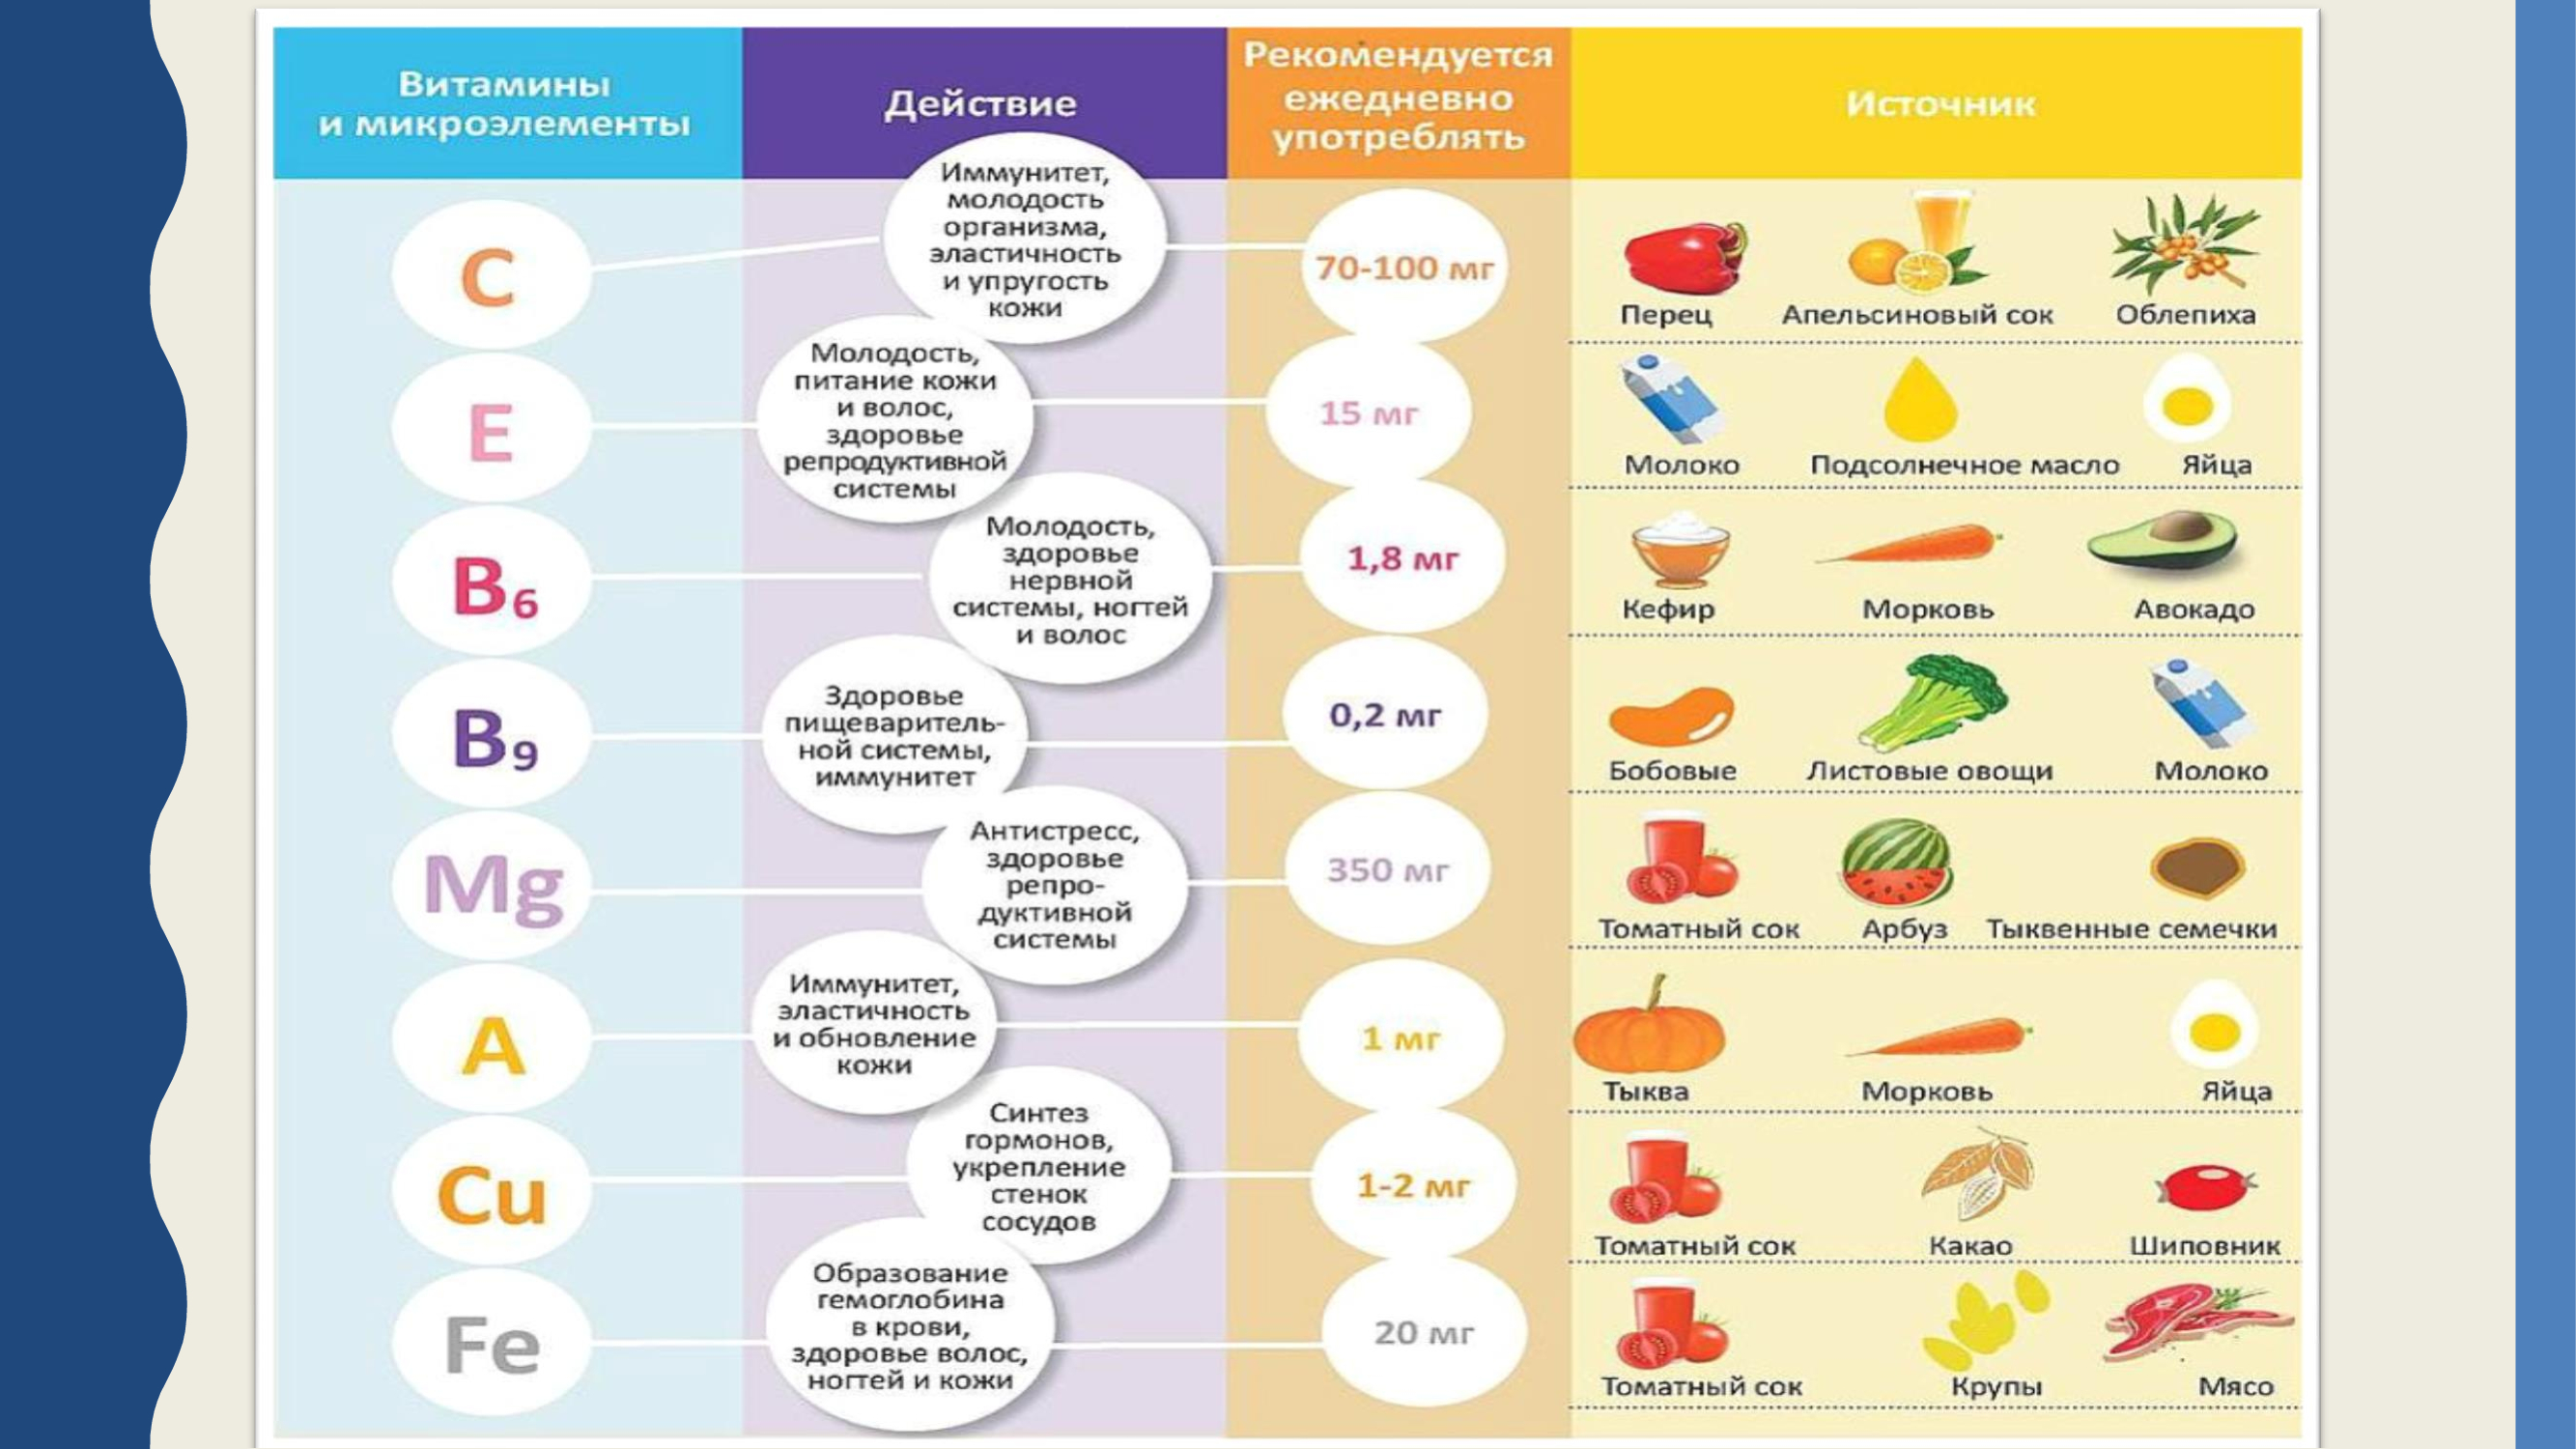 Необходимые товары для жизни. Витамины и микроэлементы. Здоровое питание таблица витаминов. Источник витаминов и микроэлементов. Микроэлементы и витамины в пище.